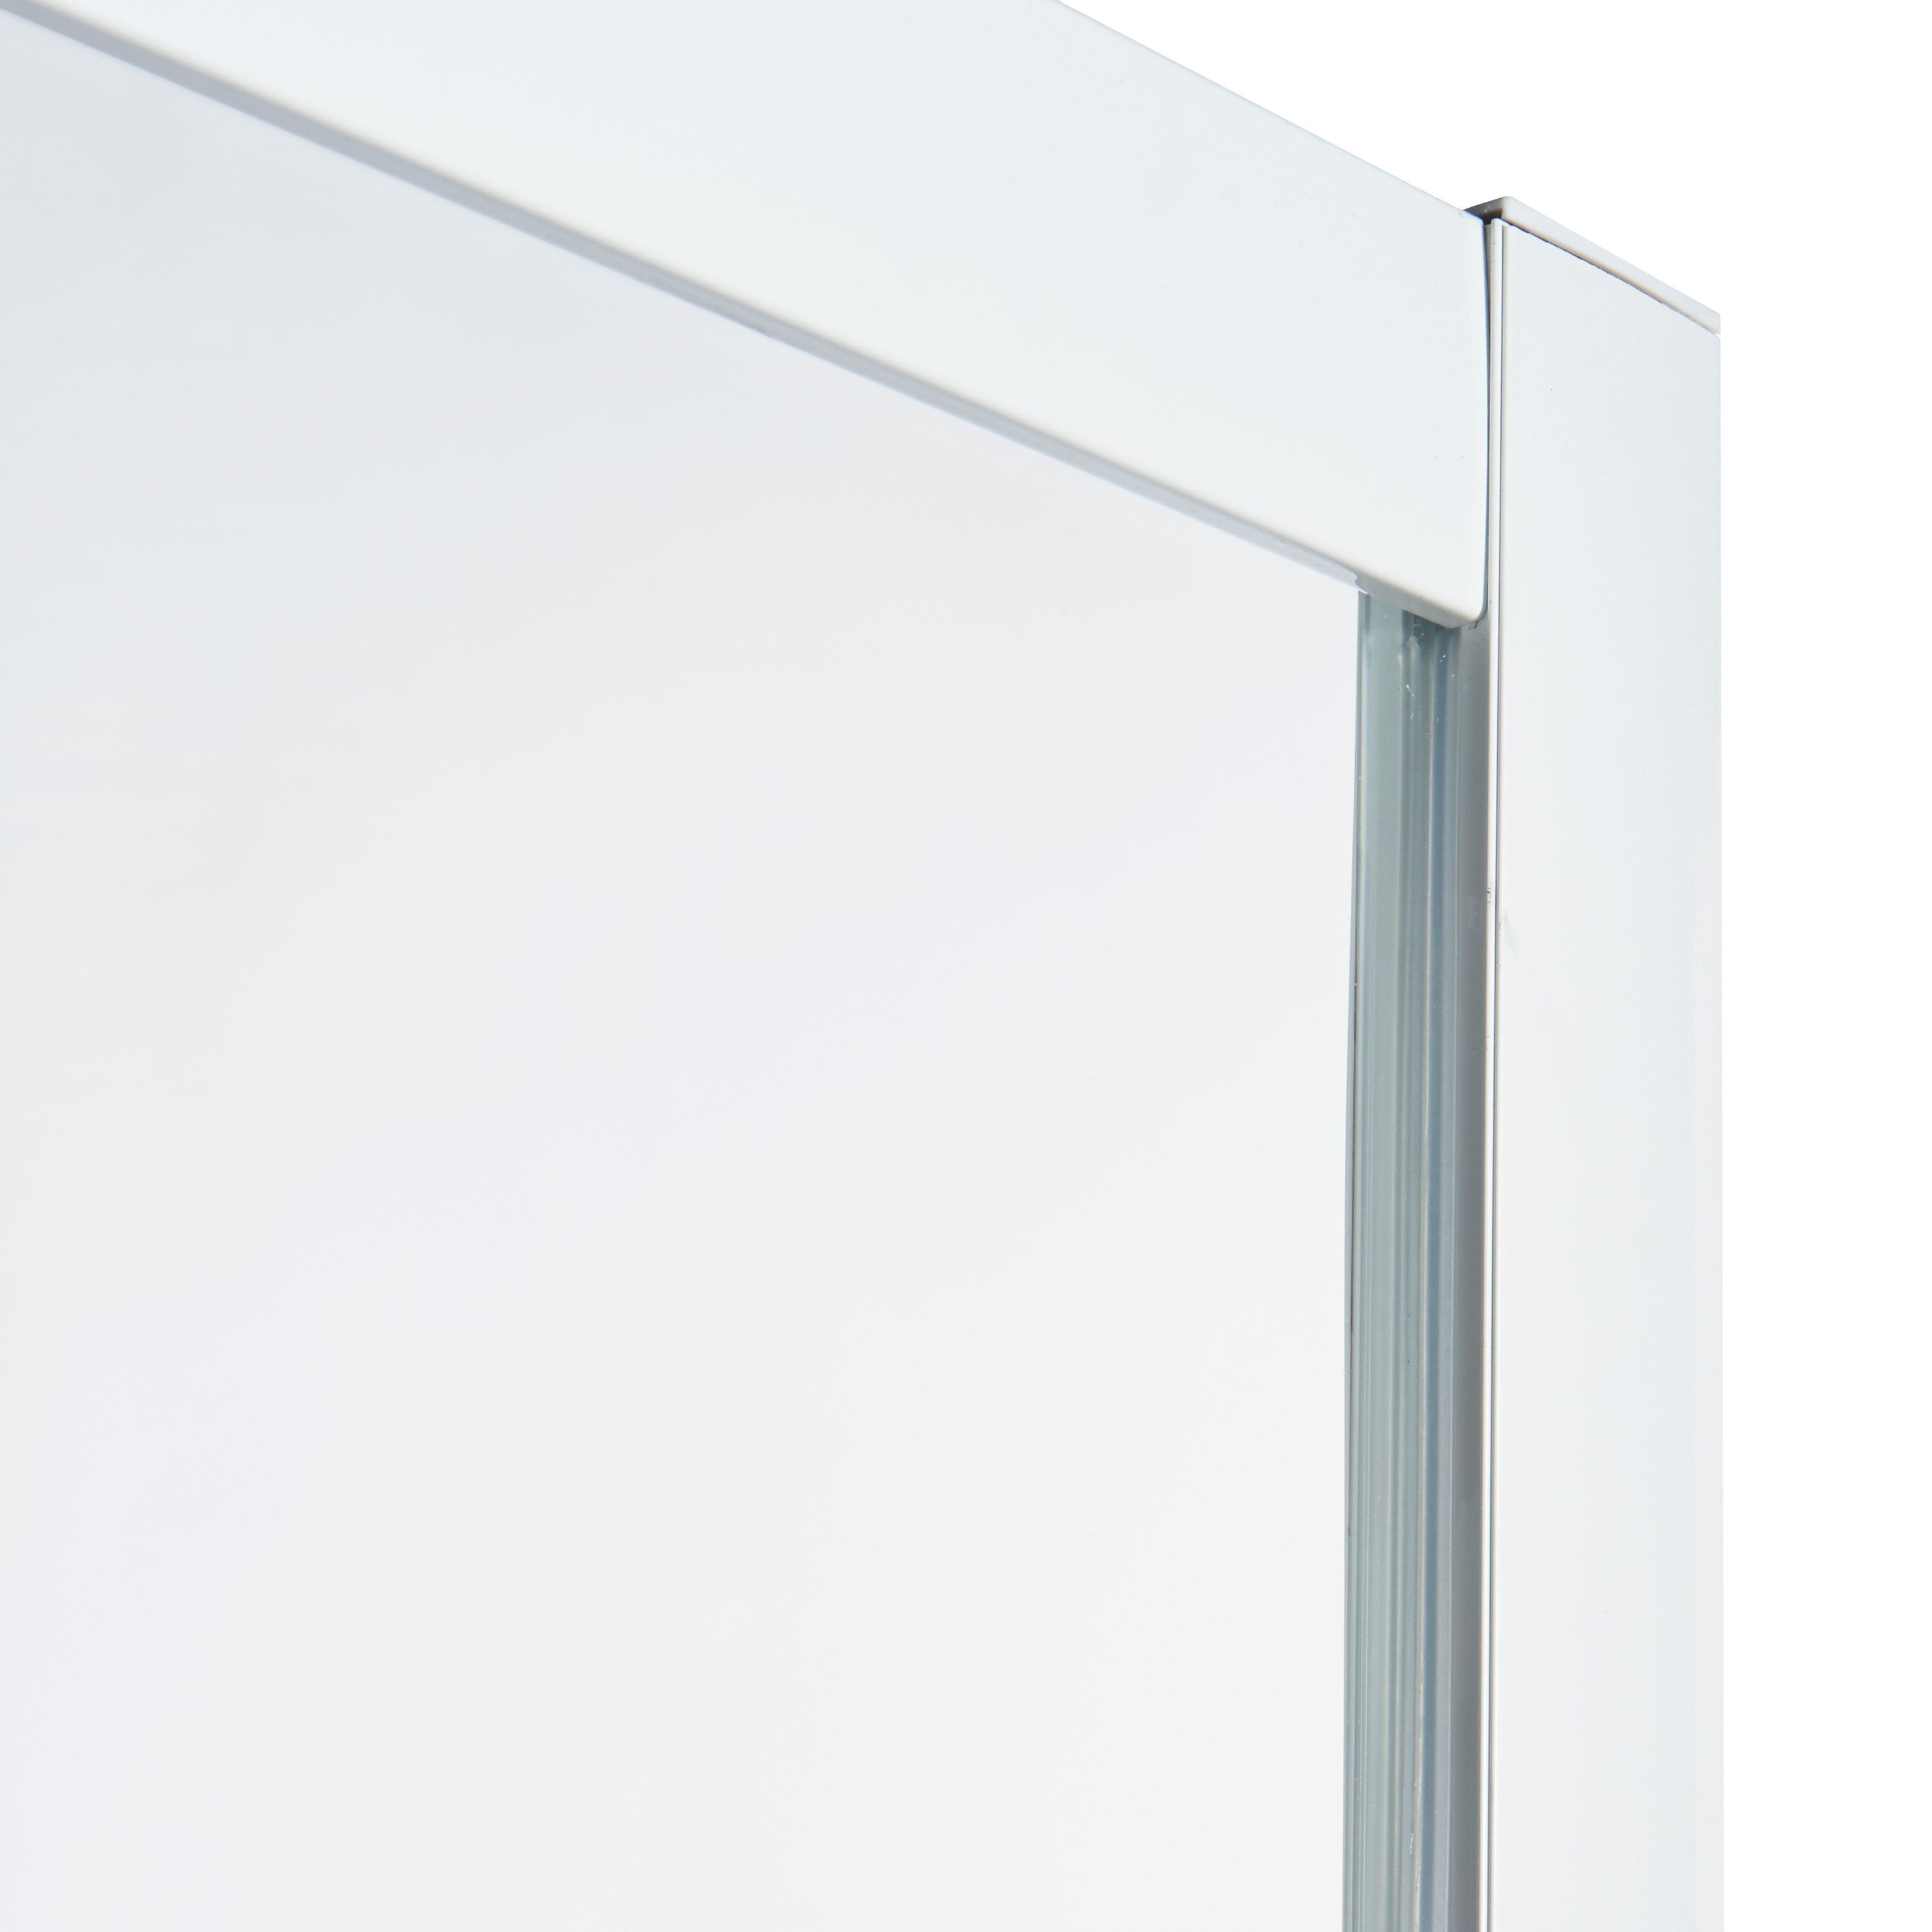 Cooke & Lewis Onega Framed Frosted Square Shower enclosure - Corner entry double sliding door (W)80cm (D)80cm